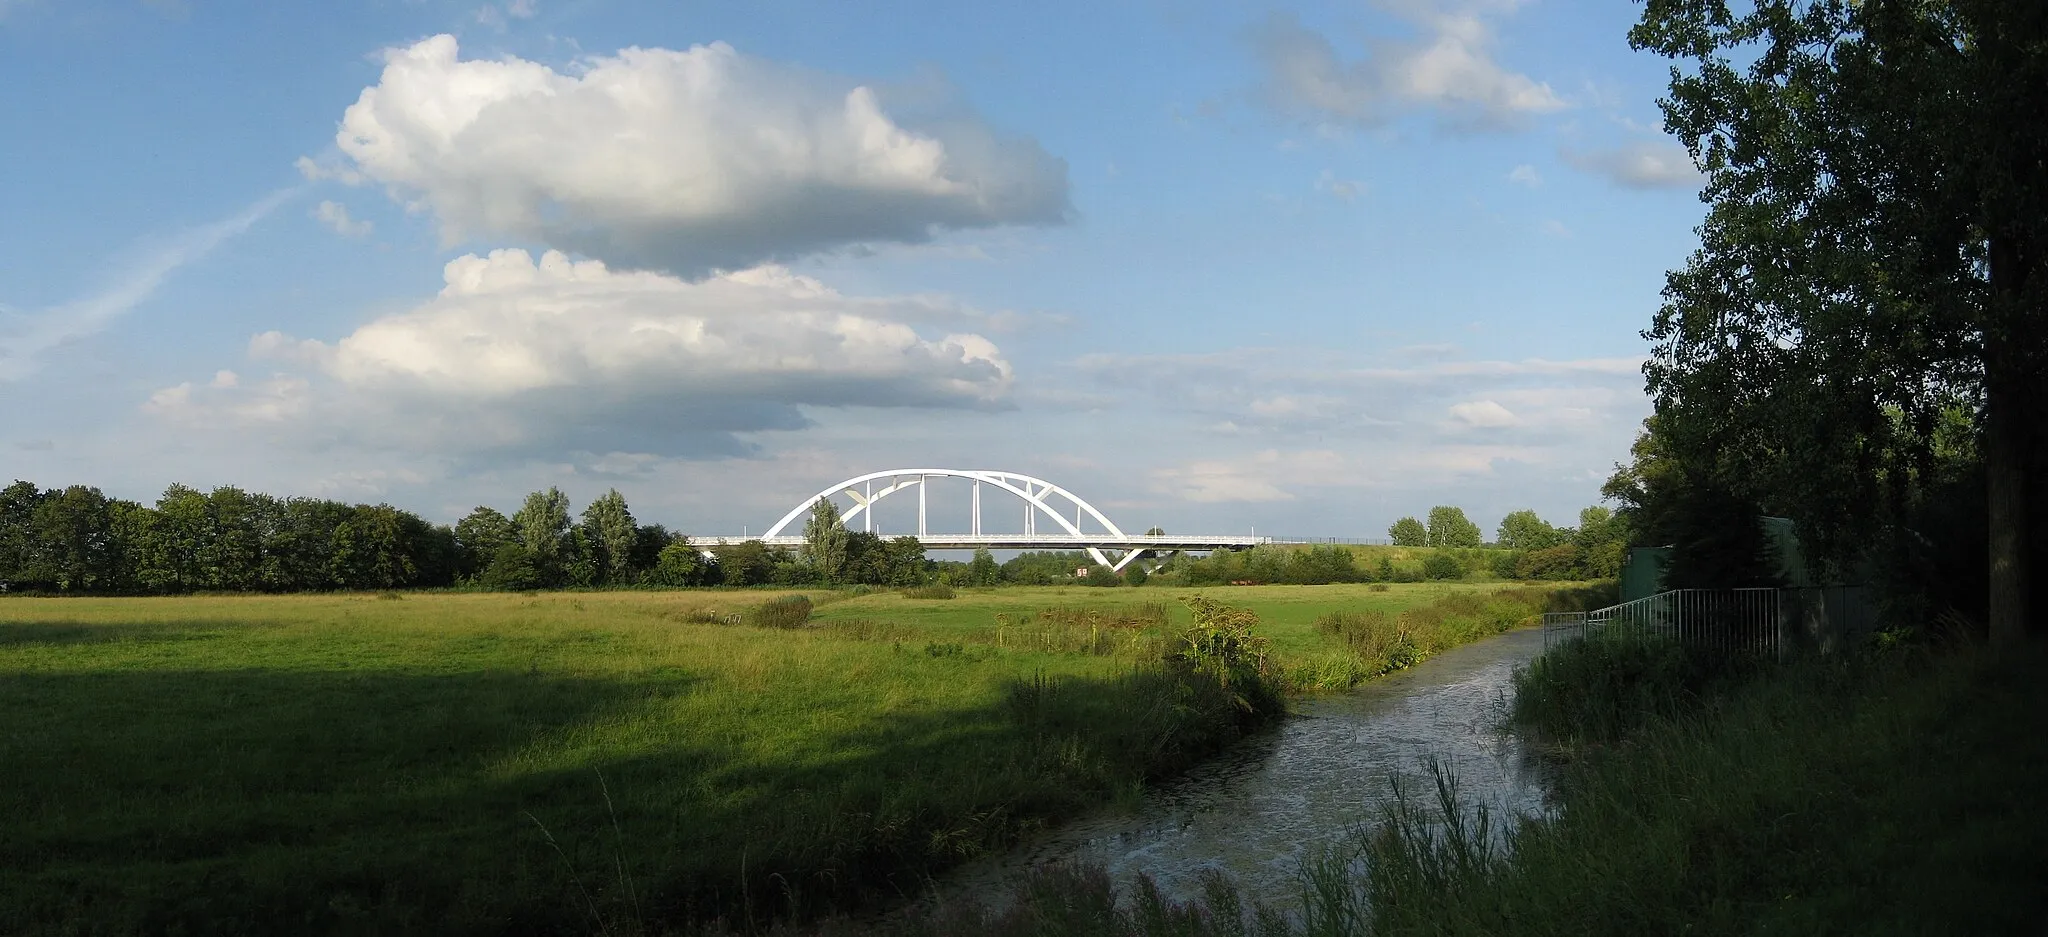 Photo showing: The Walfridus bridge (2003), a railway and bicycle bridge over the Van Starkenborghkanaal in the Dutch city of Groningen.